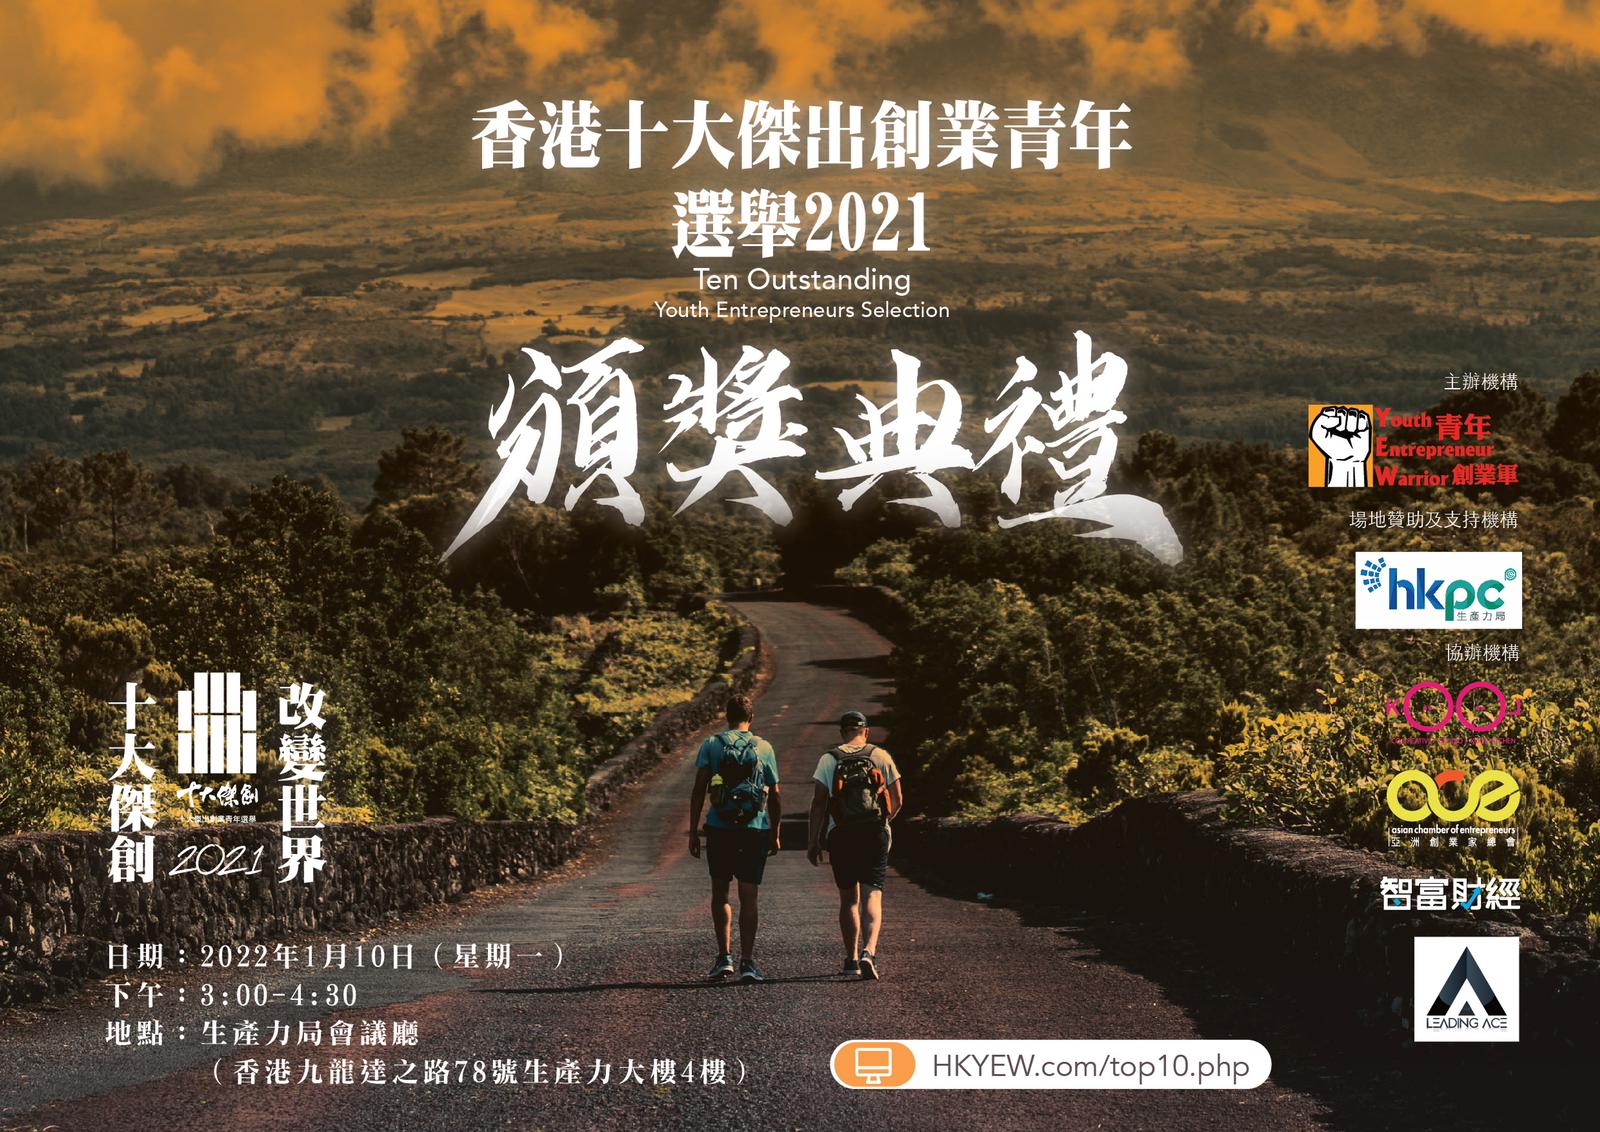 青年創業軍即將開始的活動: 「香港十大傑出創業青年選舉2021」 頒獎典禮